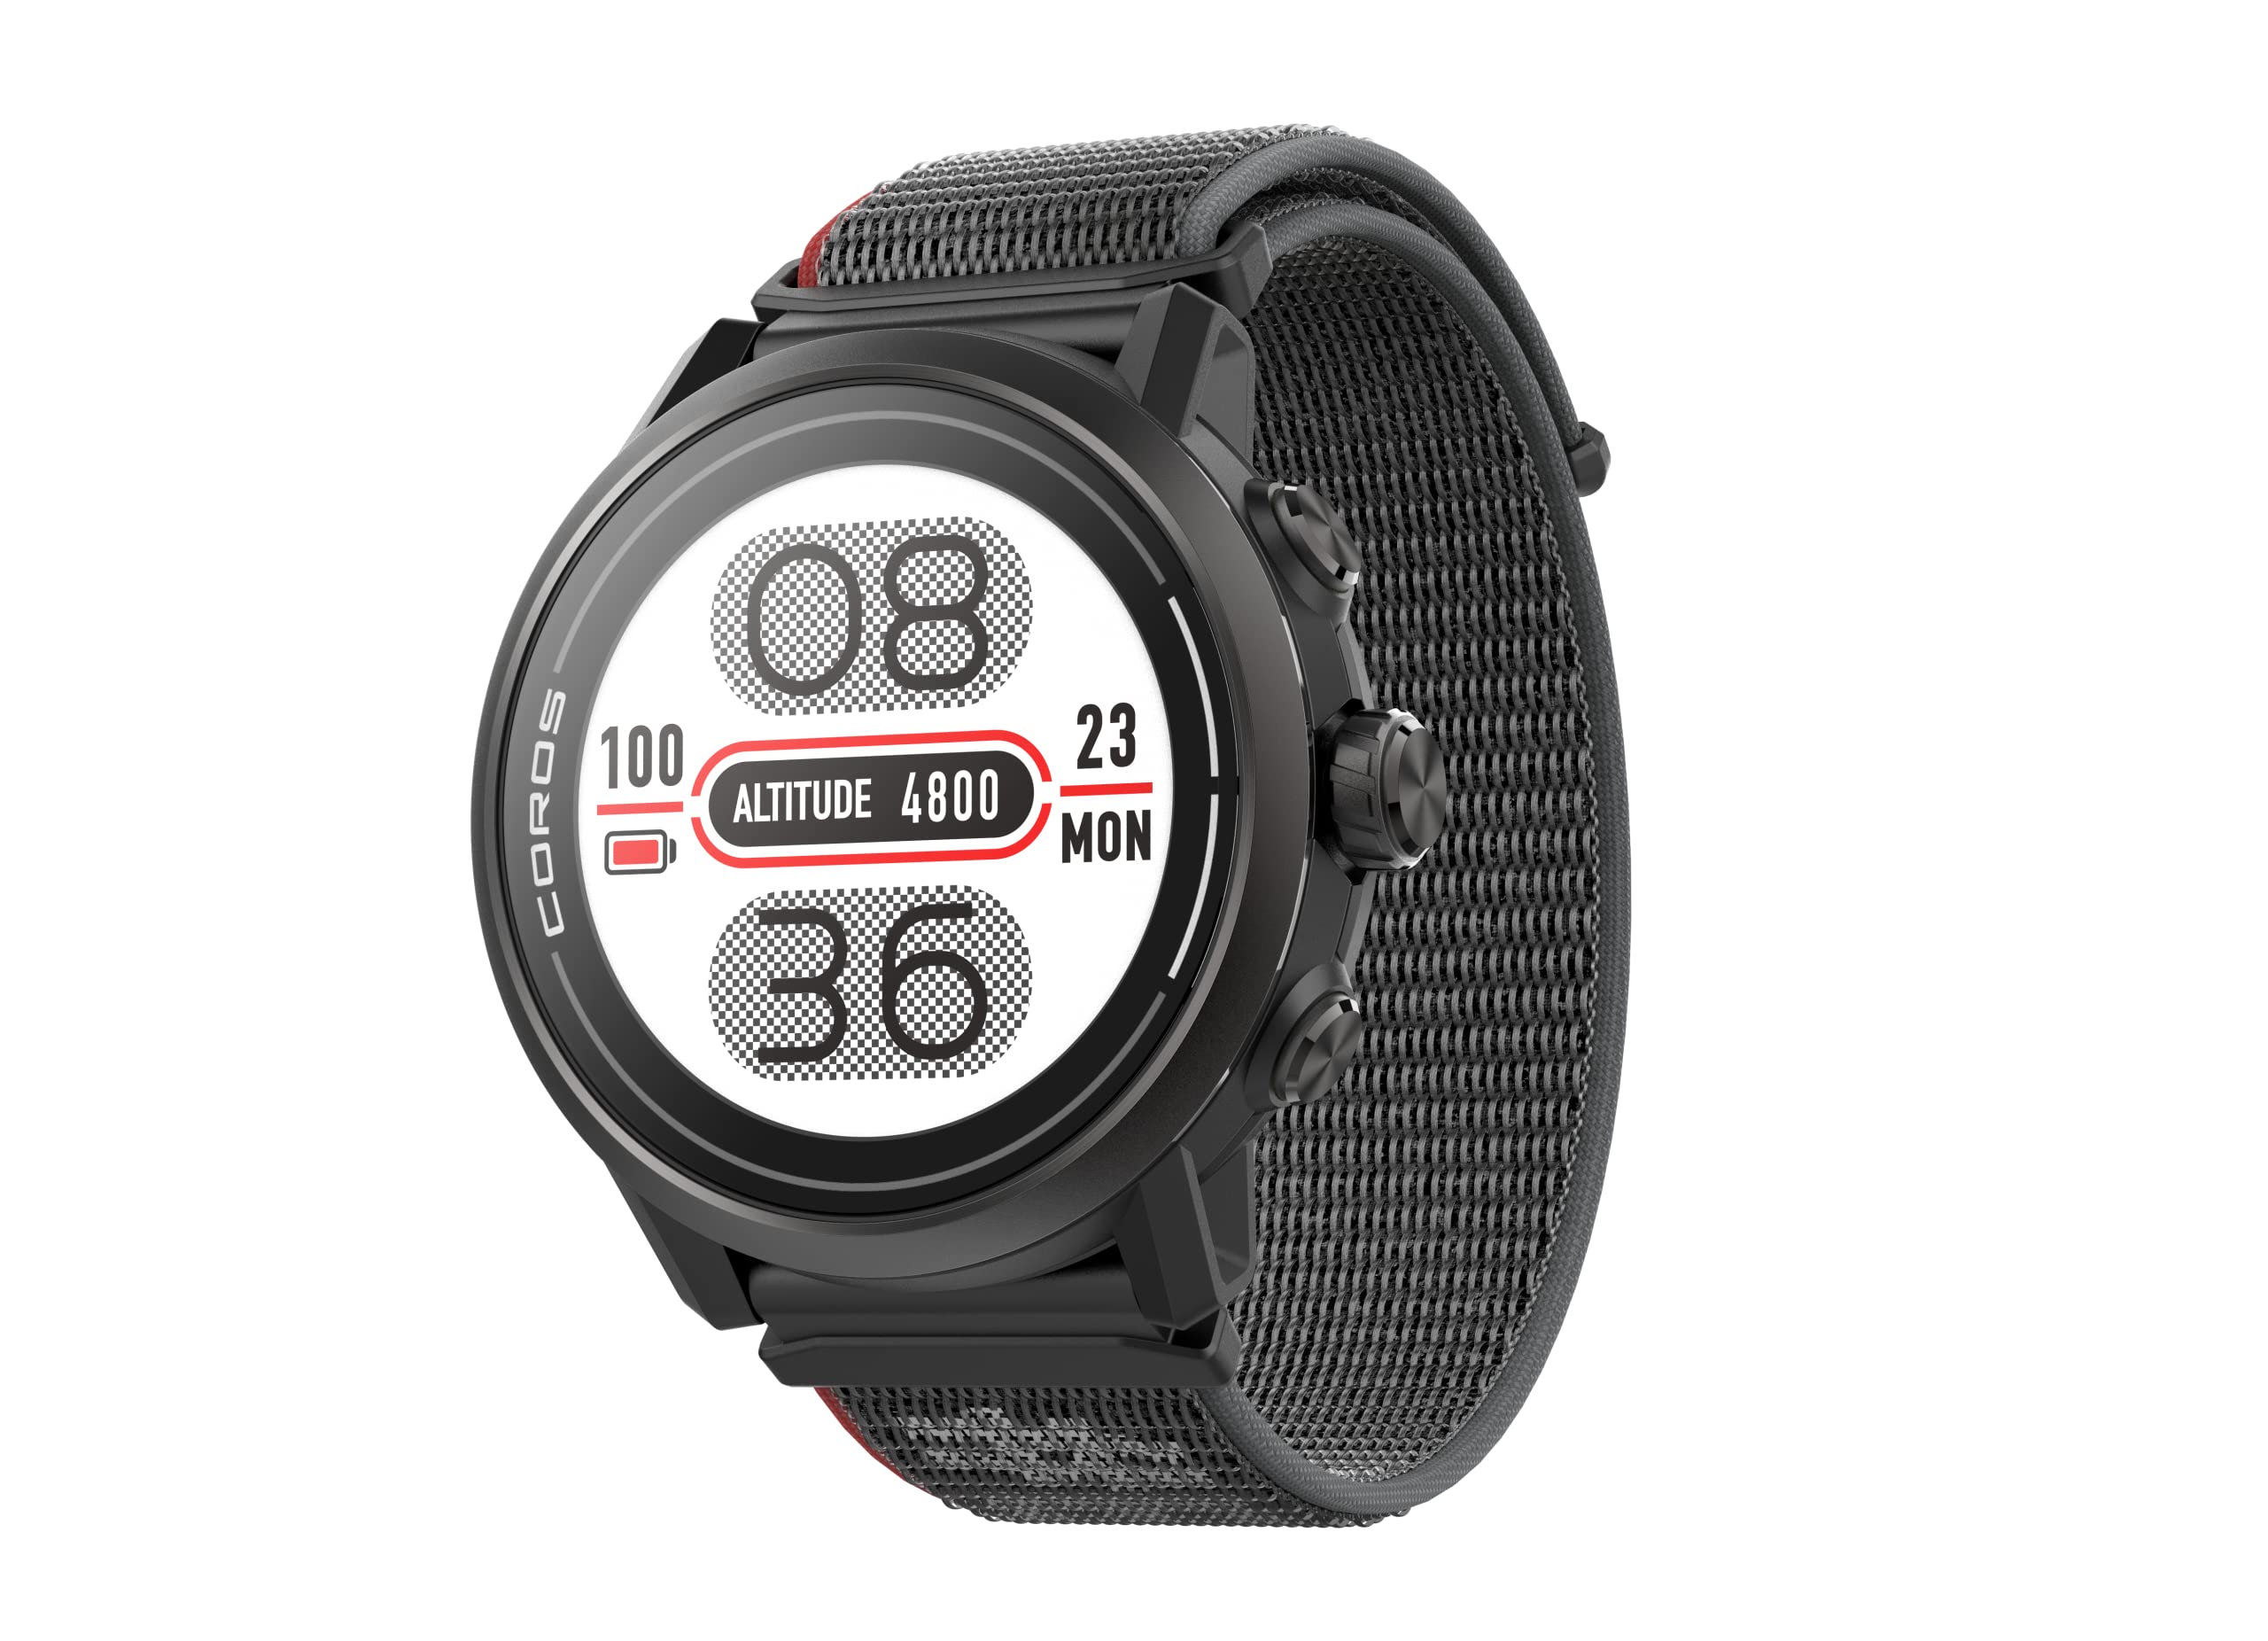 COROS Часы APEX 2/2 Pro с GPS для активного отдыха